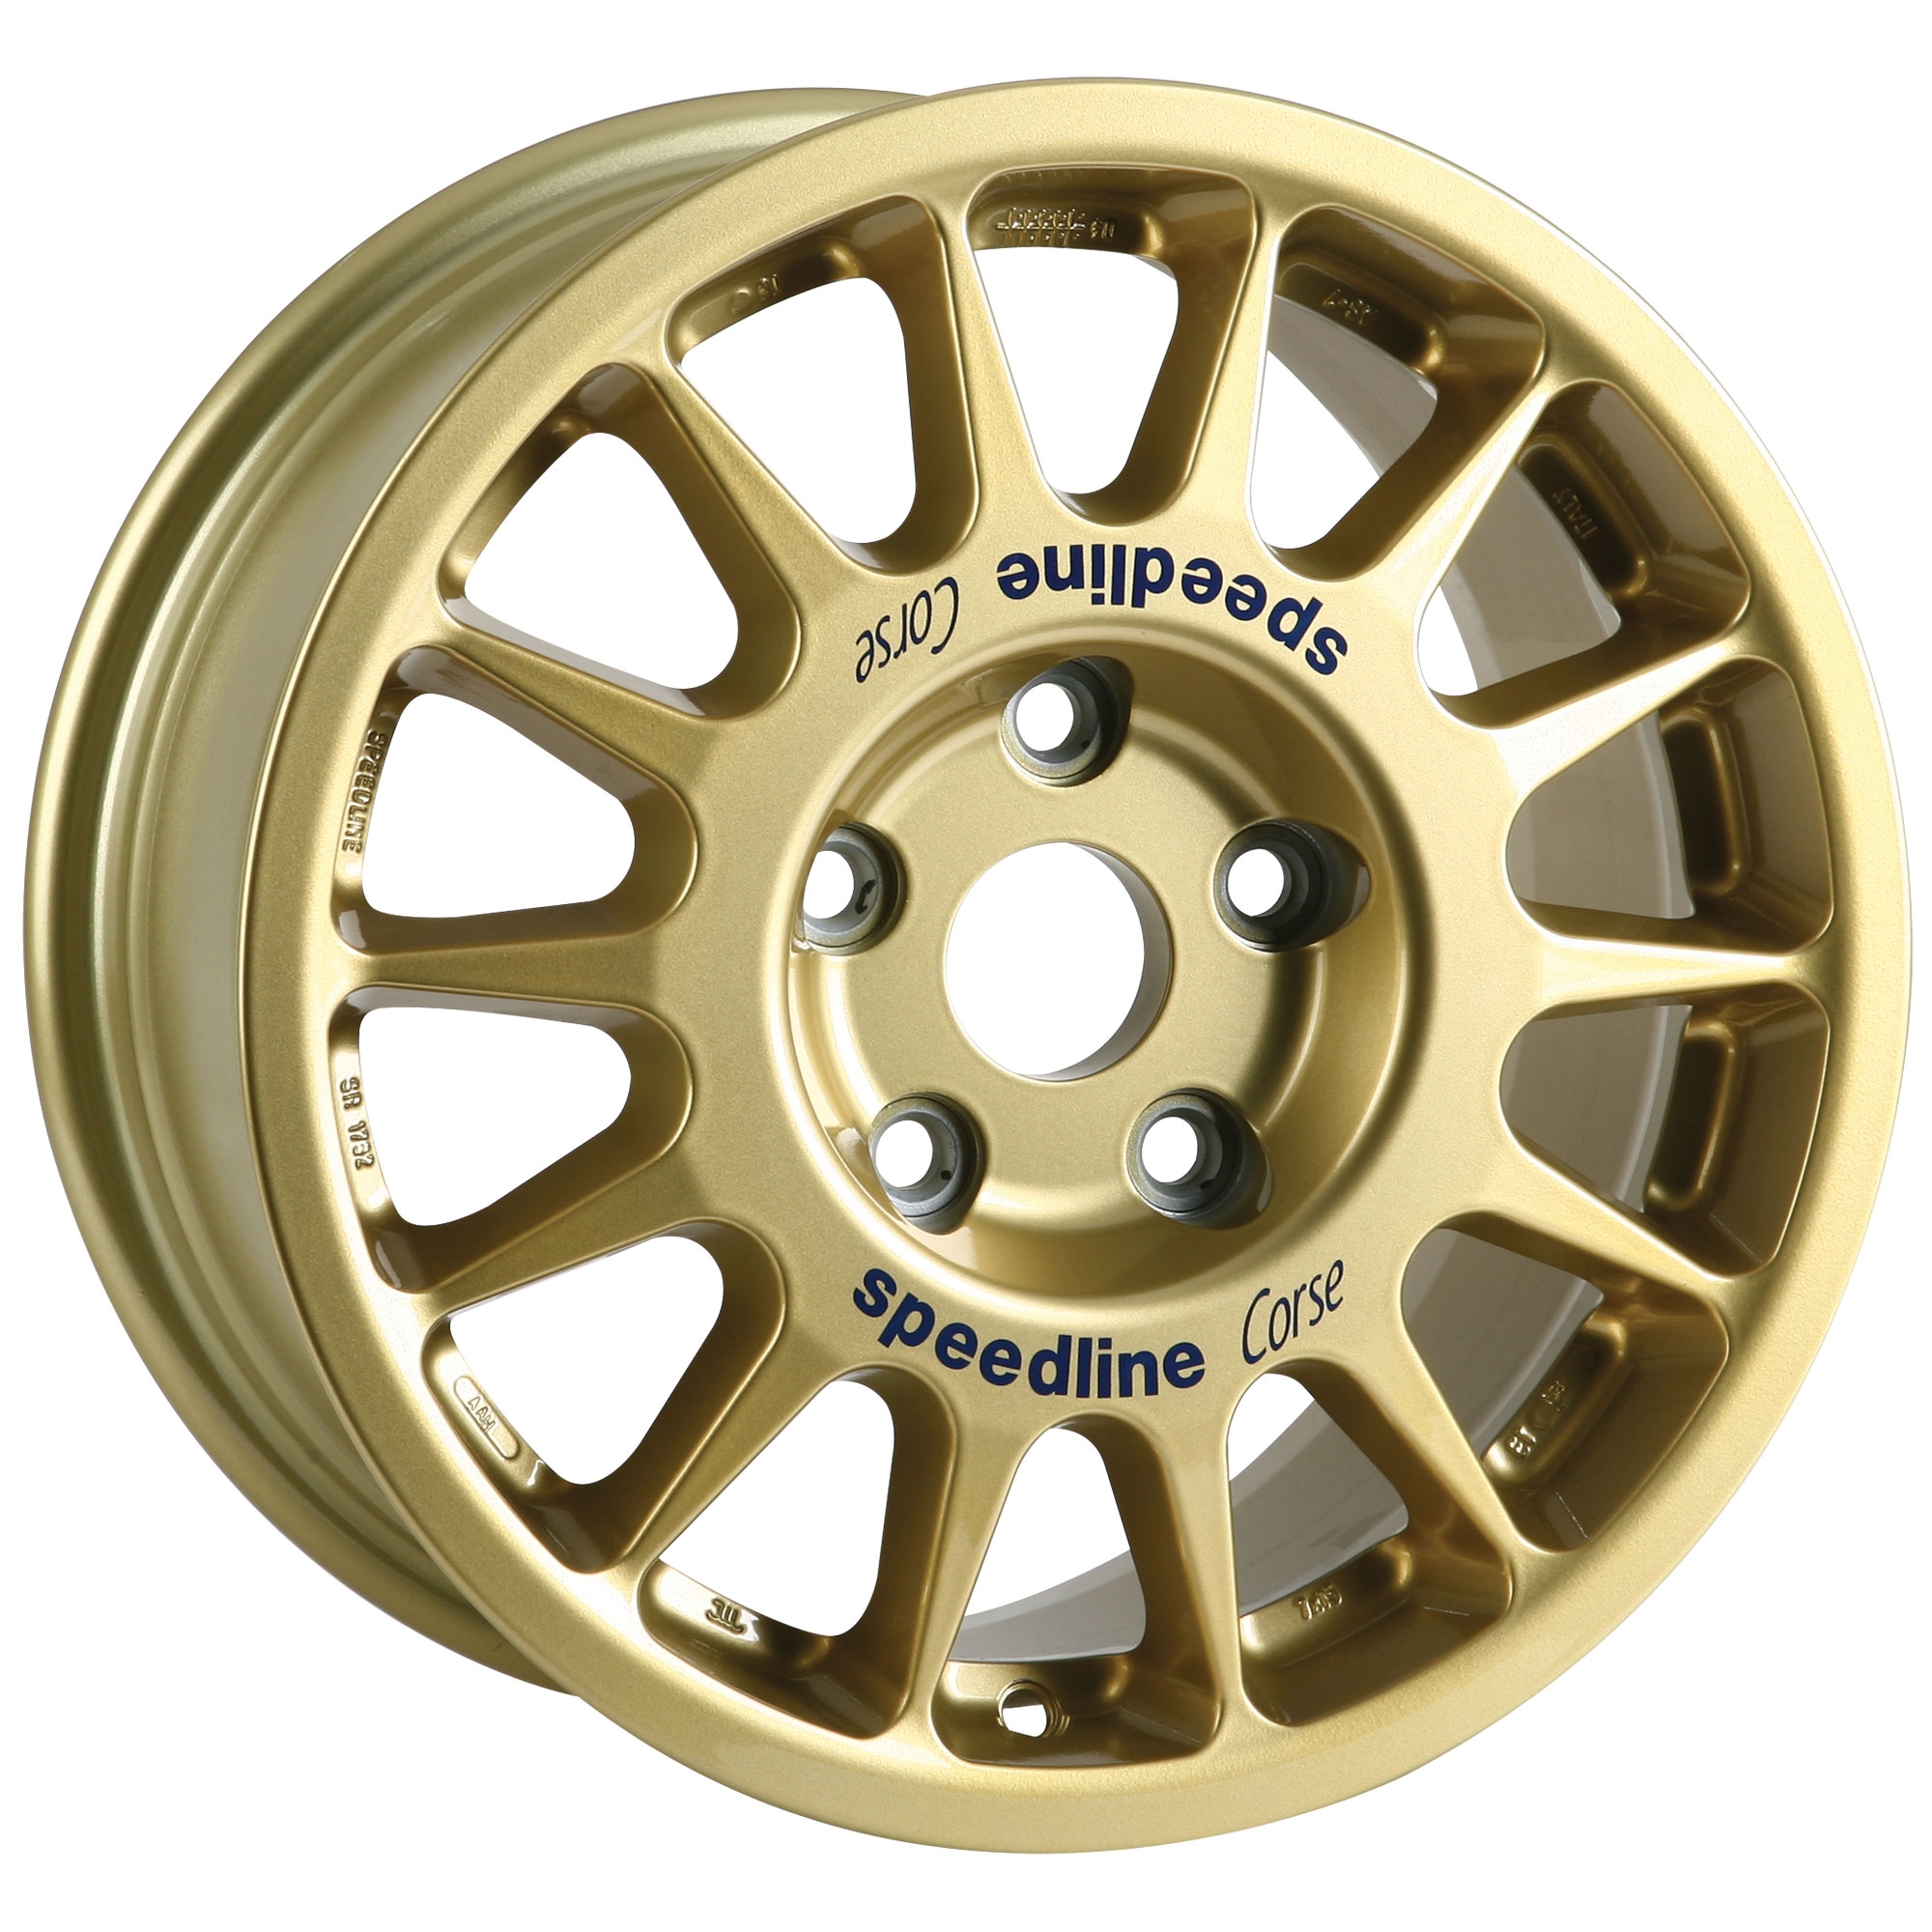 4 x Speedline Corse Gold Type 2118 Alloy Wheels | 15x7 Inch | ET53 ...